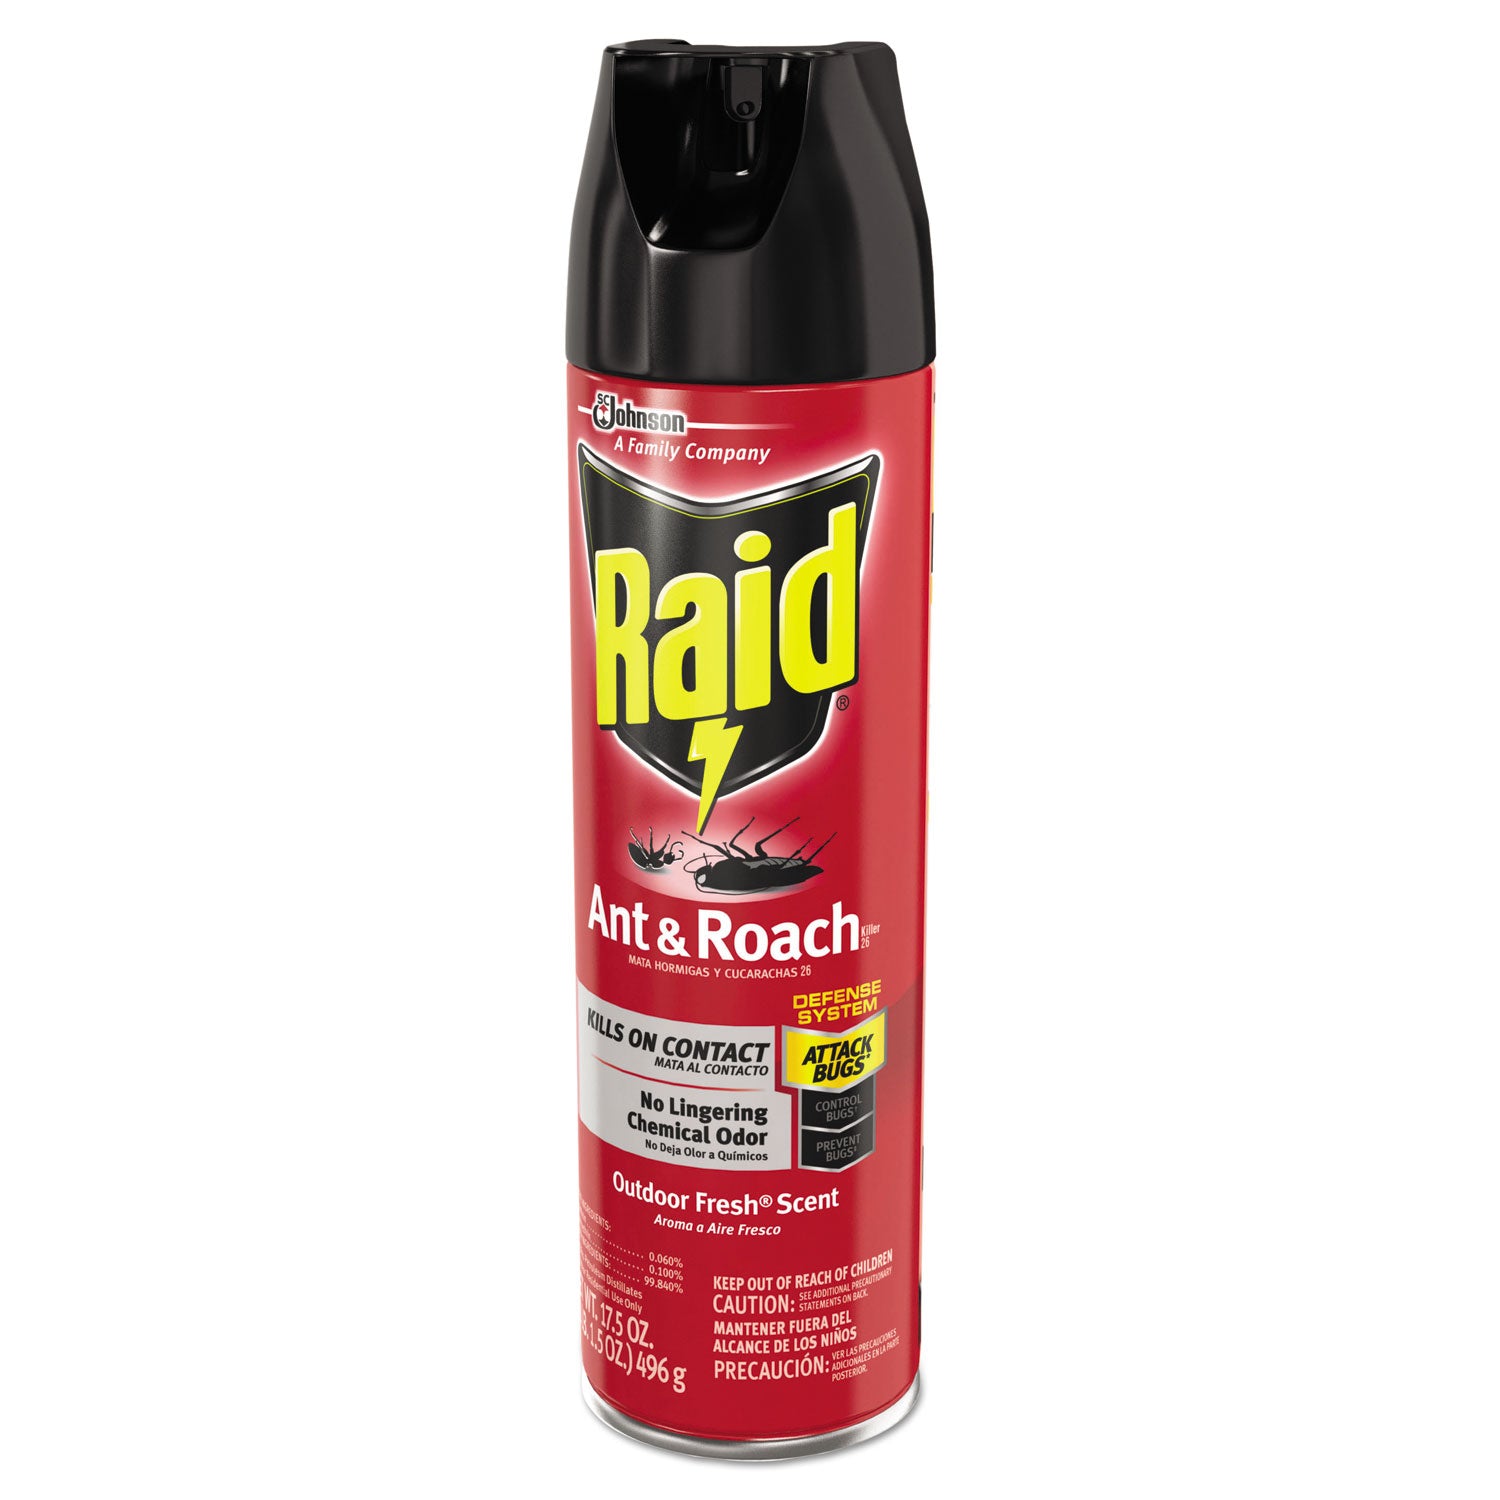 ant-and-roach-killer-175-oz-aerosol-spray-outdoor-fresh-12-carton_sjn351104 - 2